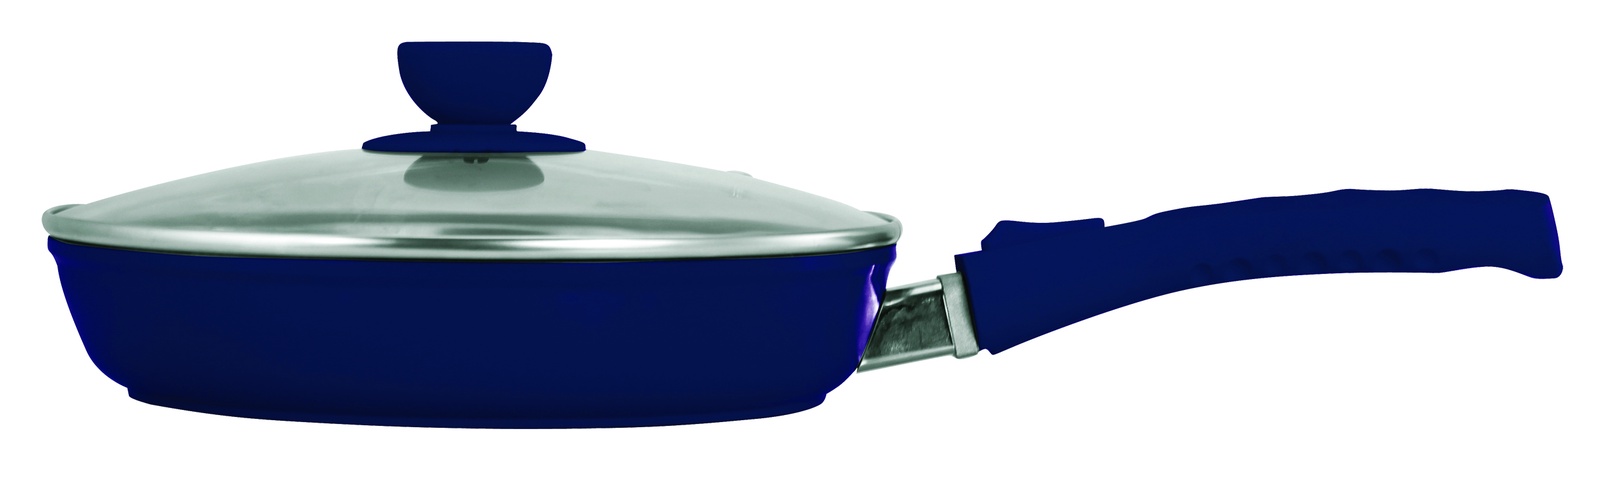 фото Сковорода Bohmann, с крышкой, со съемной ручкой, с керамическим покрытием, цвет: синий. Диаметр 22 см. 7022BH/3D/синий